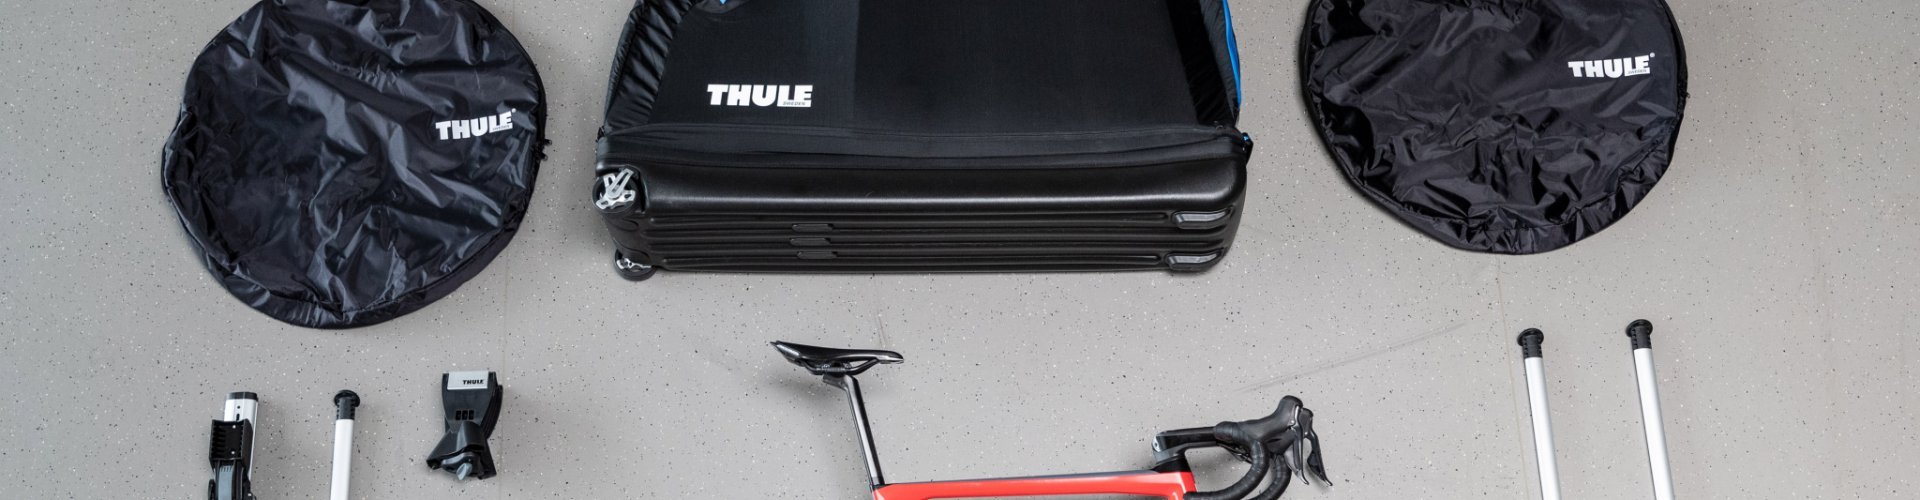 Maleta para bicicletas softshell con soporte de montaje de bicicleta integrado que facilita viajar con la bicicleta.